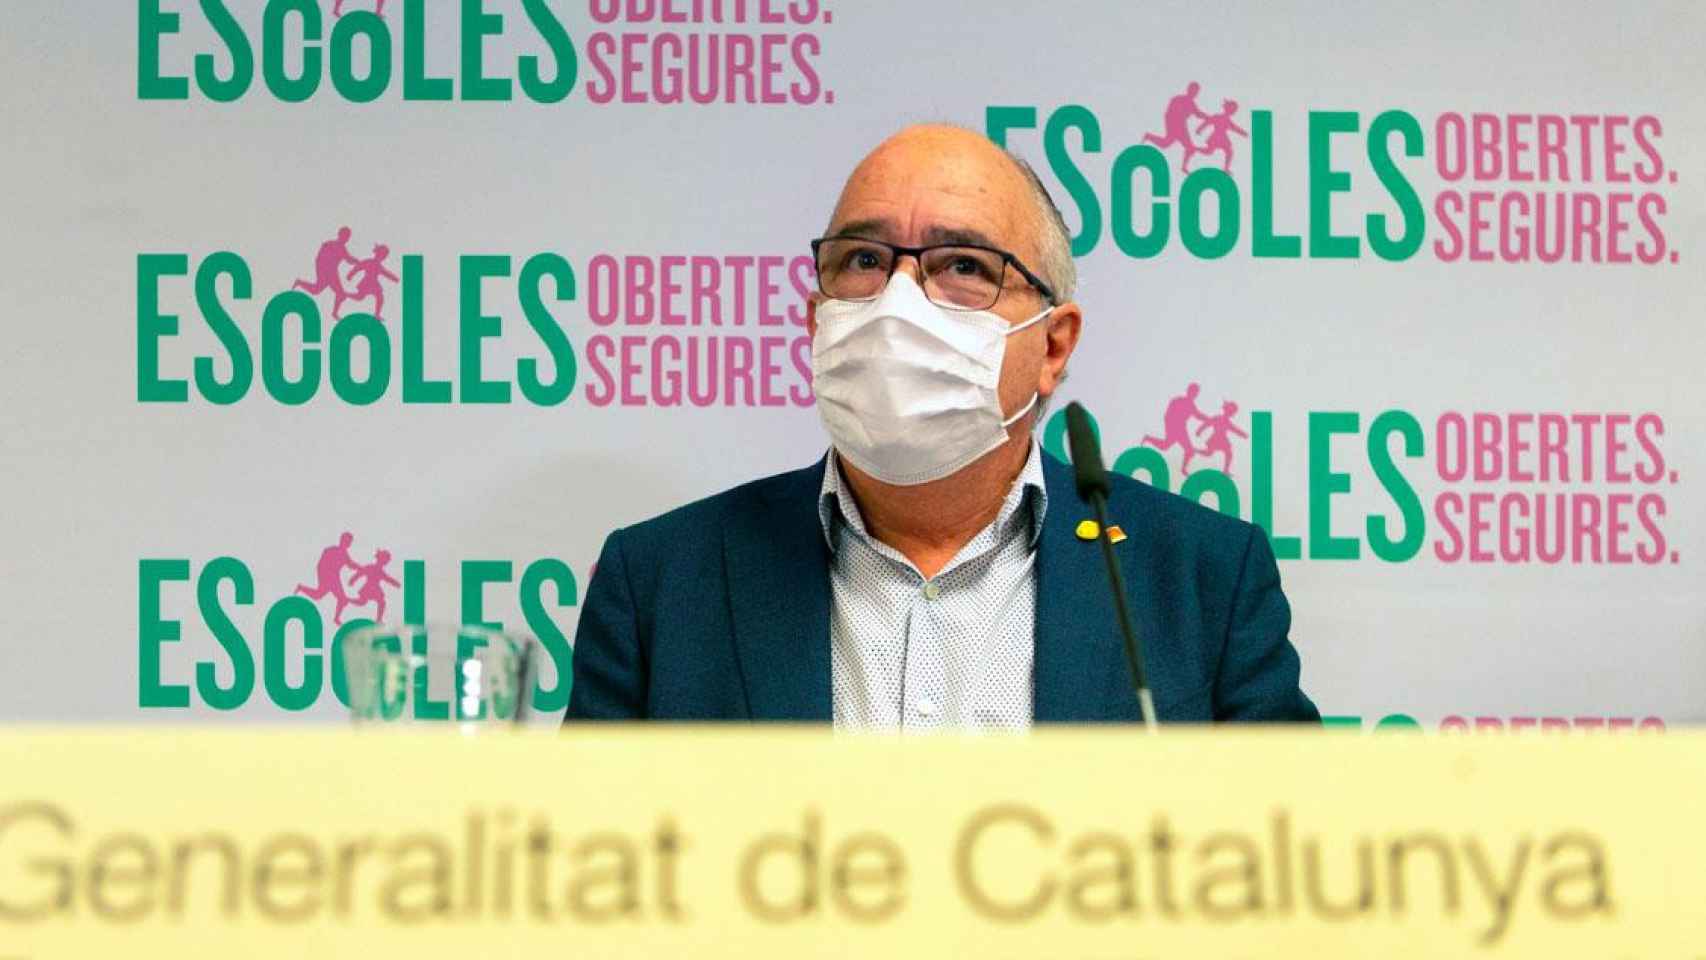 El máximo órgano de transparencia expedienta a la Consejería de Educación, cuyo titular es Josep Bargalló, por ocultar el porcentaje de castellano que se usa en los colegios / EFE